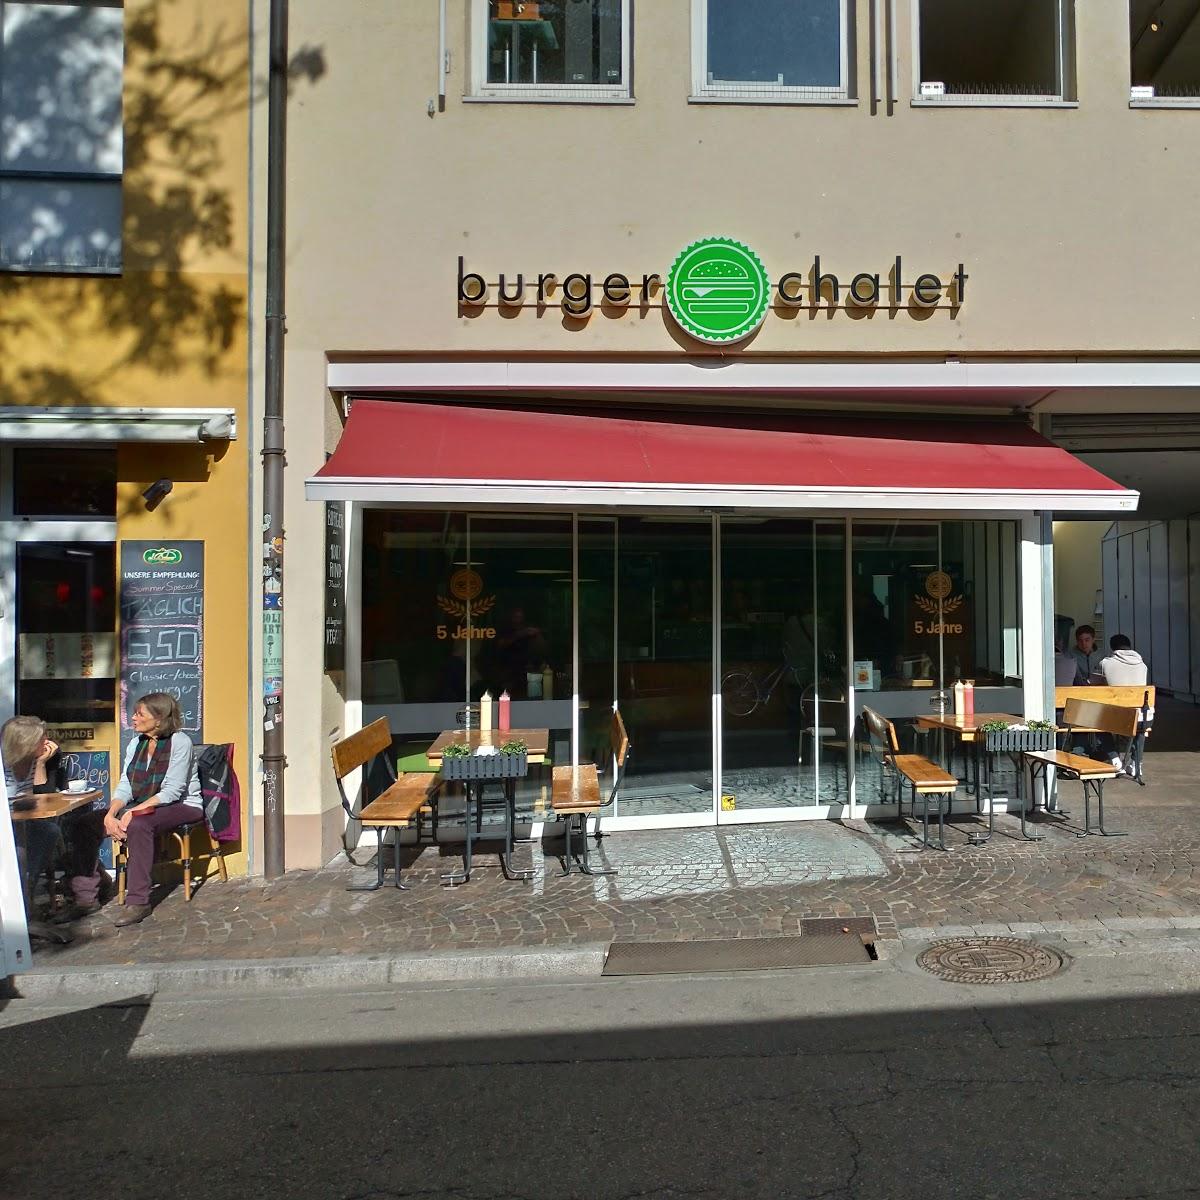 Restaurant "Burger Chalet" in Freiburg im Breisgau